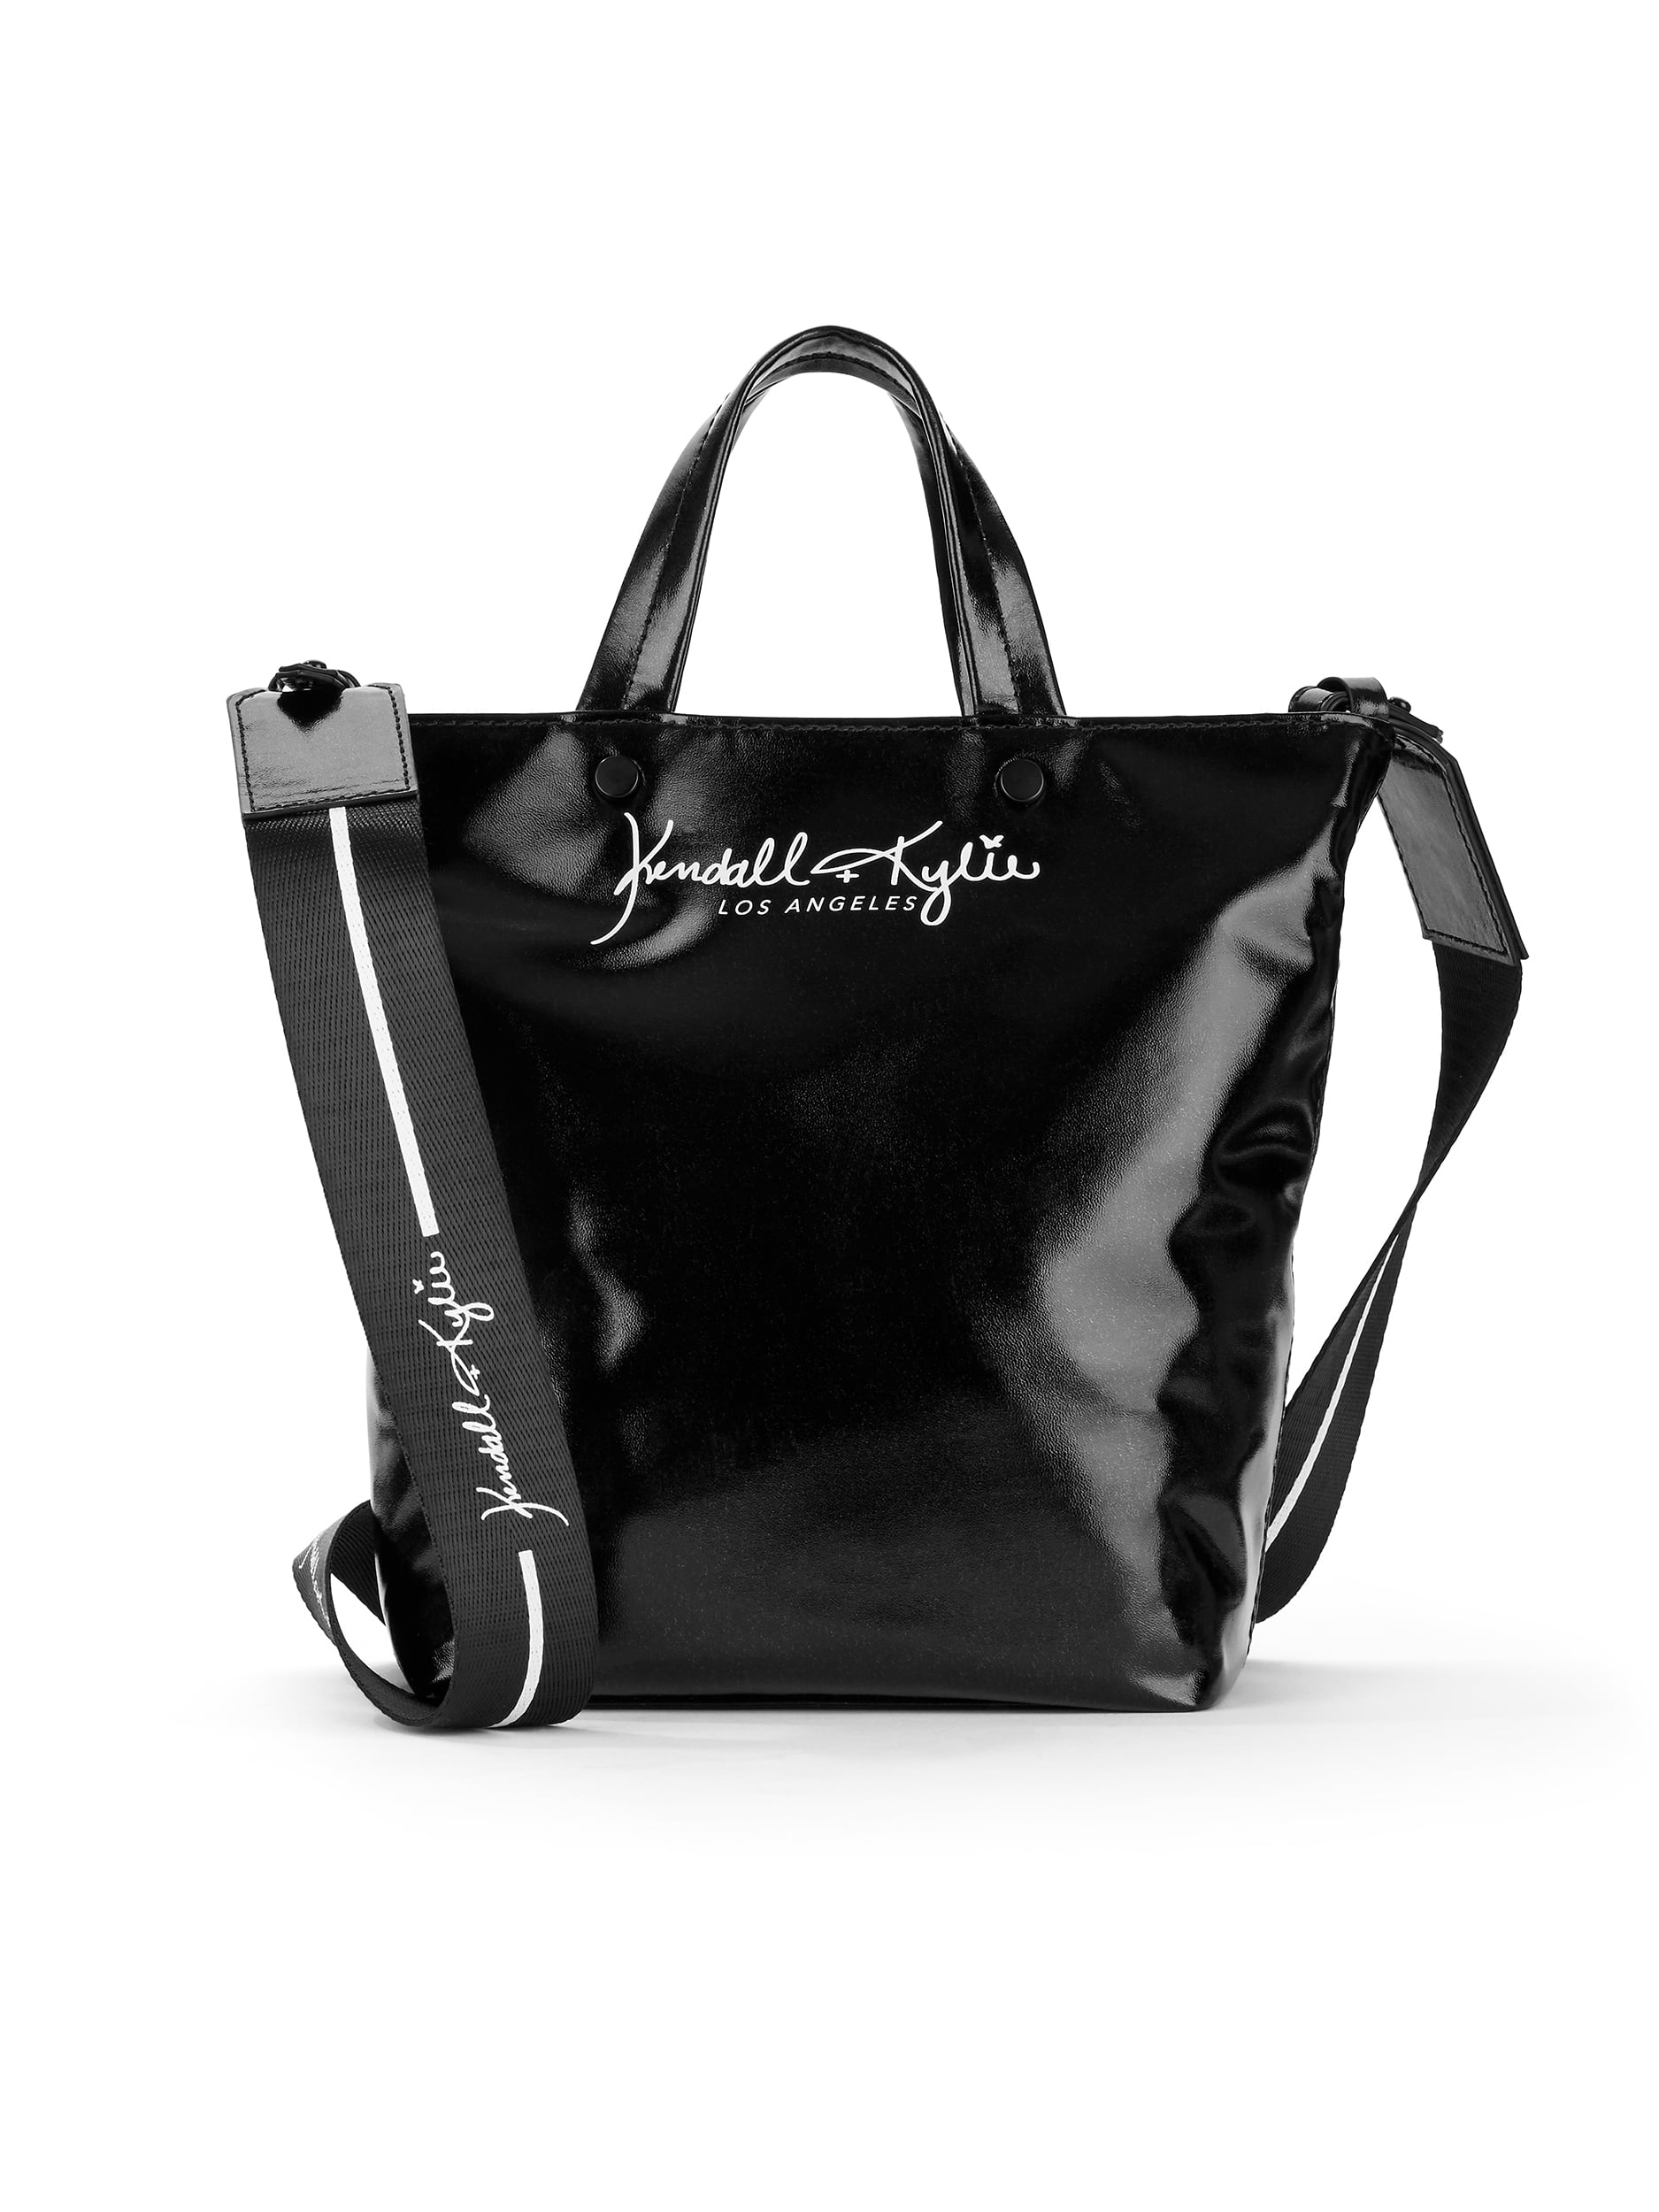 KENDALL + KYLIE Backpacks : Buy KENDALL + KYLIE Womens Black Solid Backpack  Online